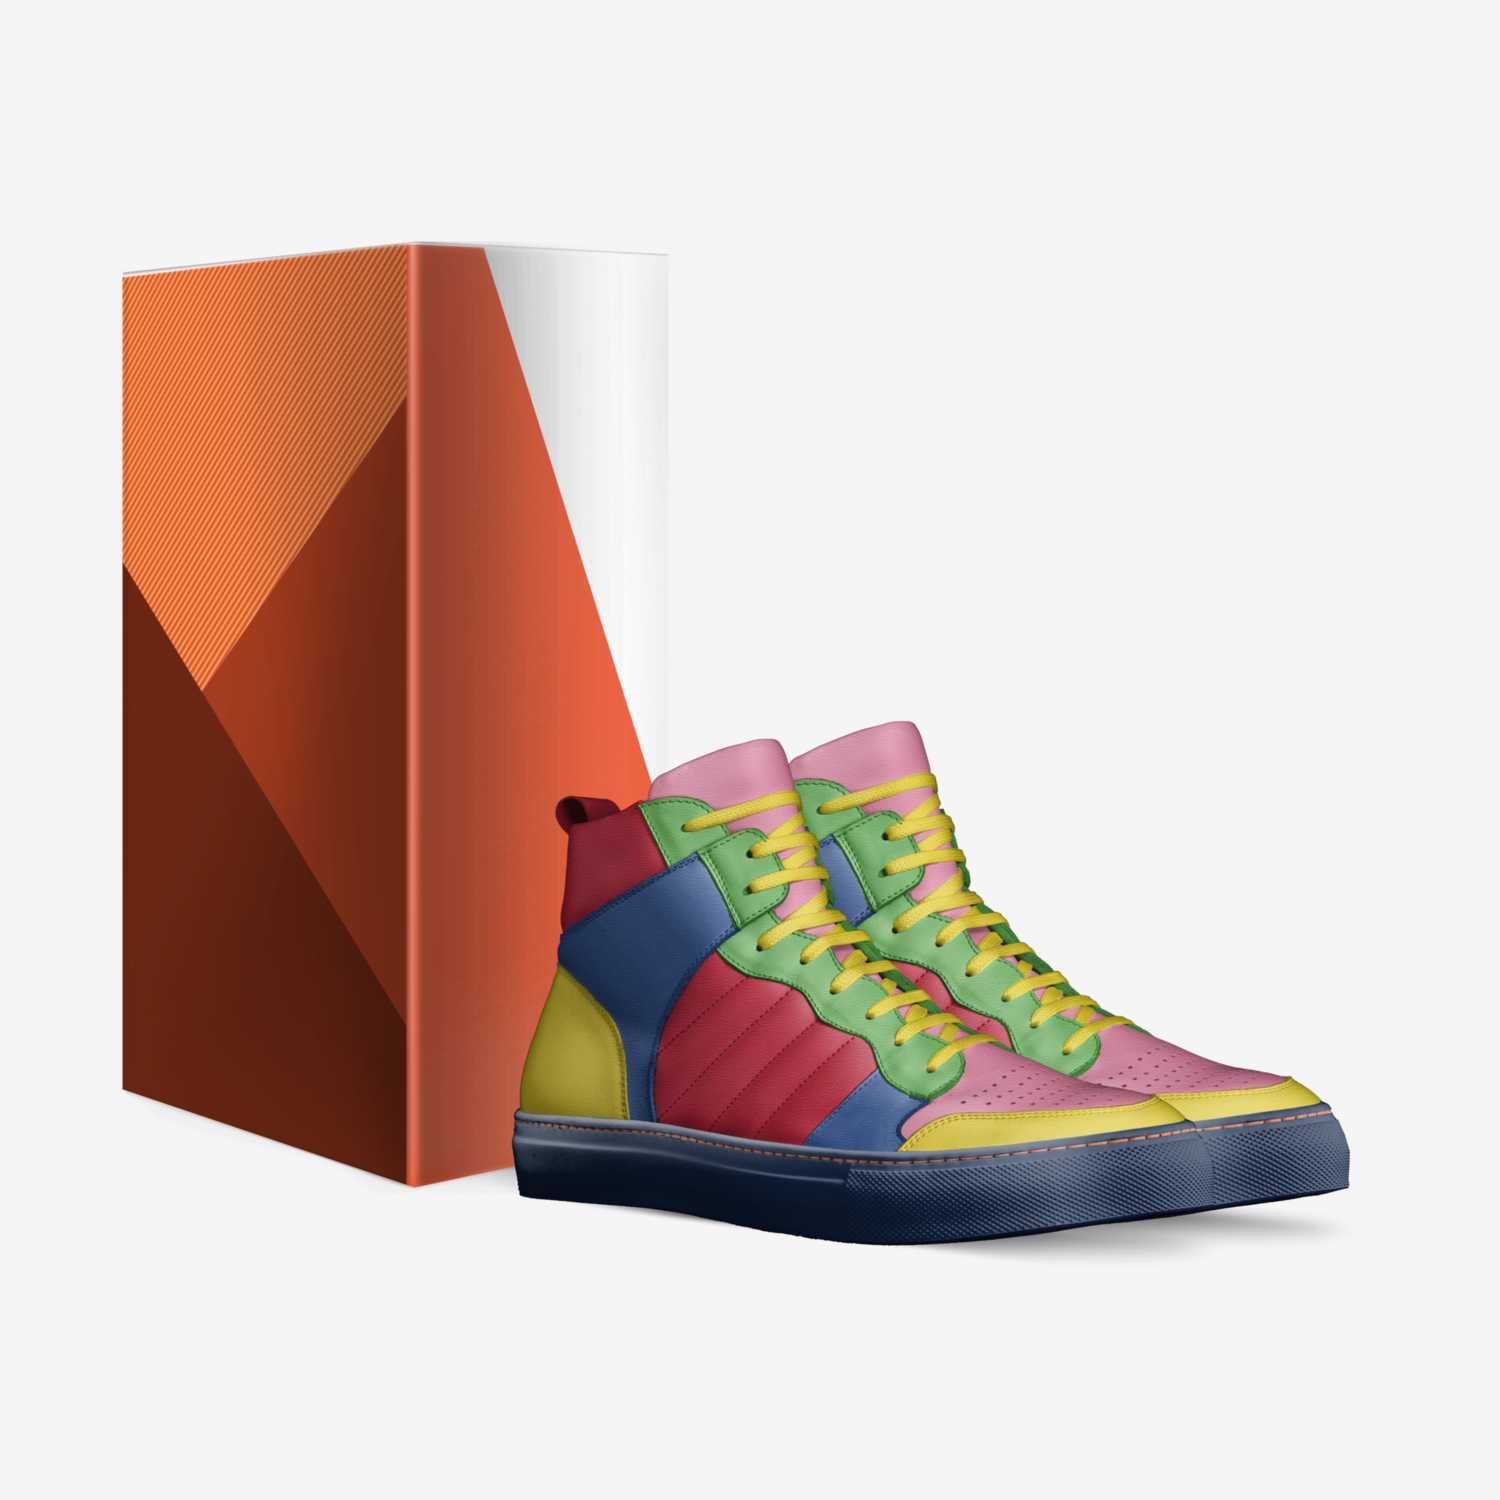 Jan Lasek custom made in Italy shoes by Jan Lasek | Box view